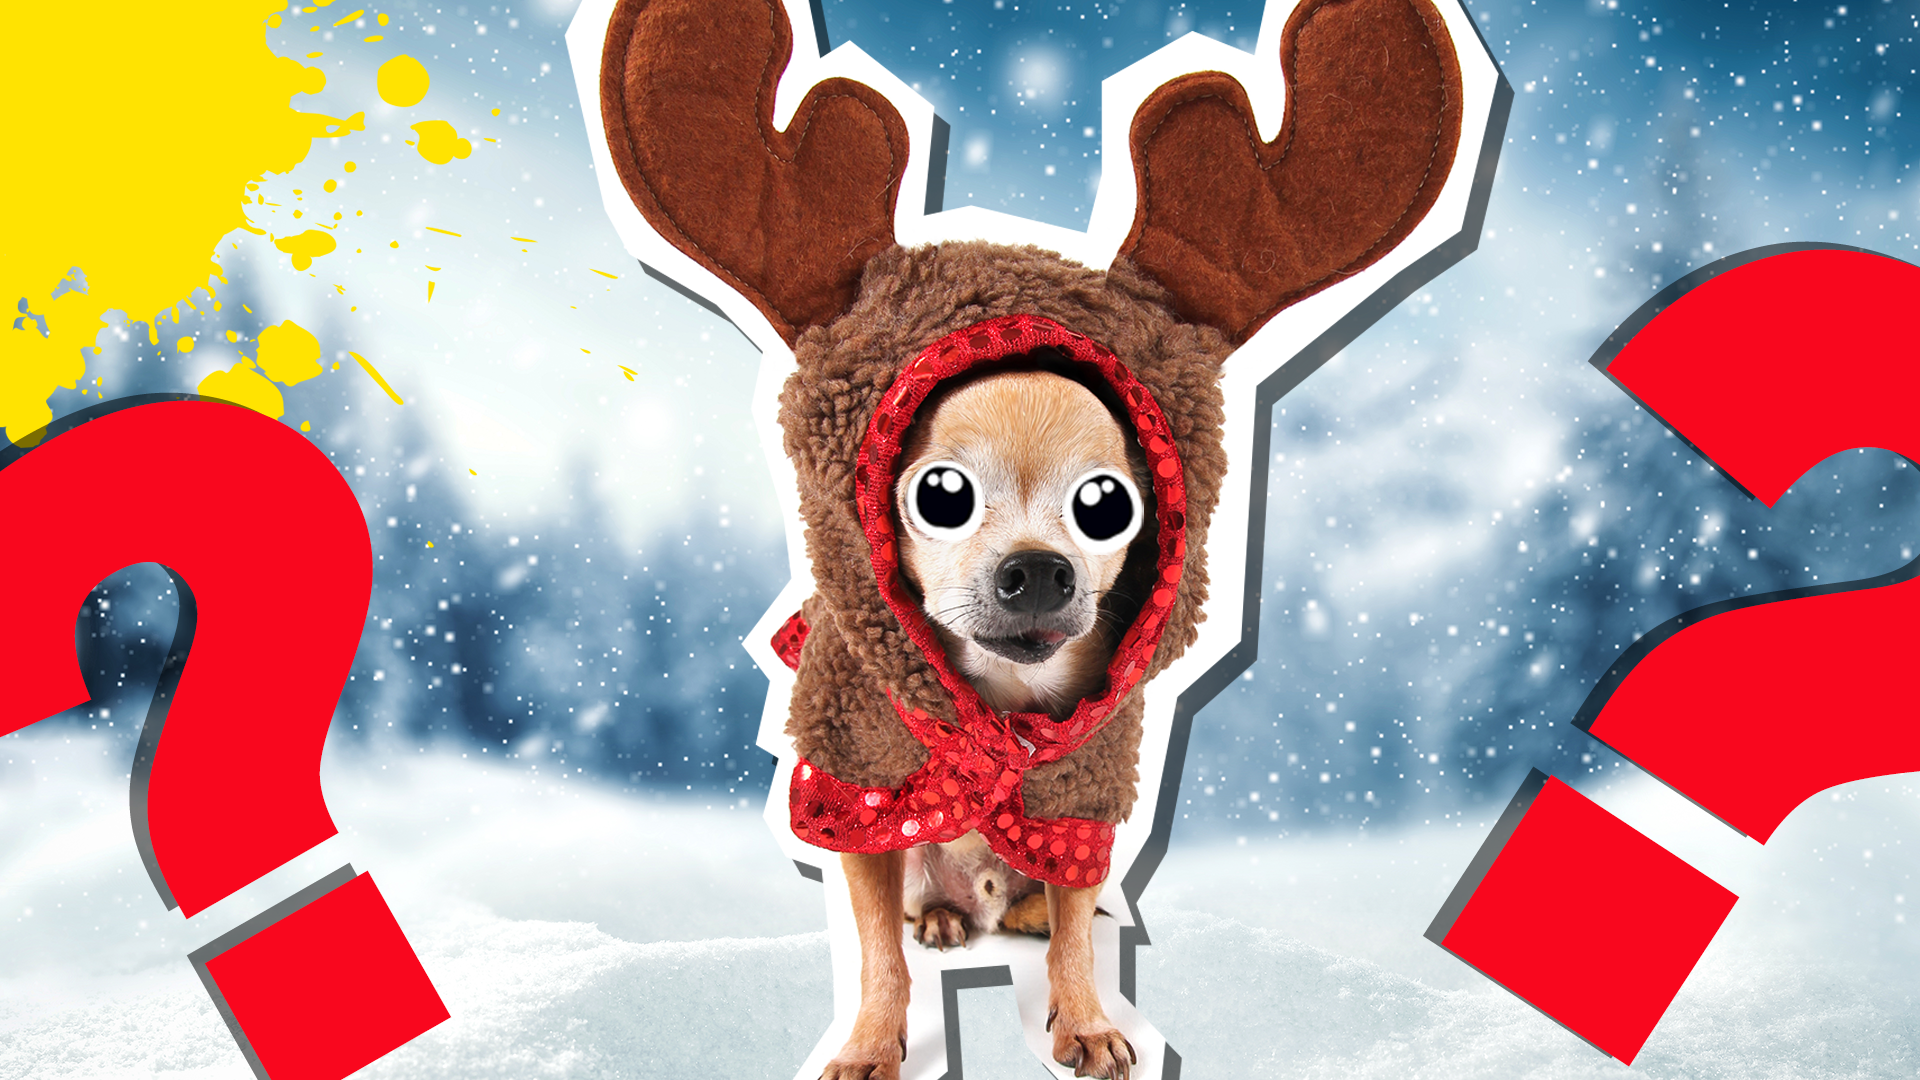 Dog in reindeer costume